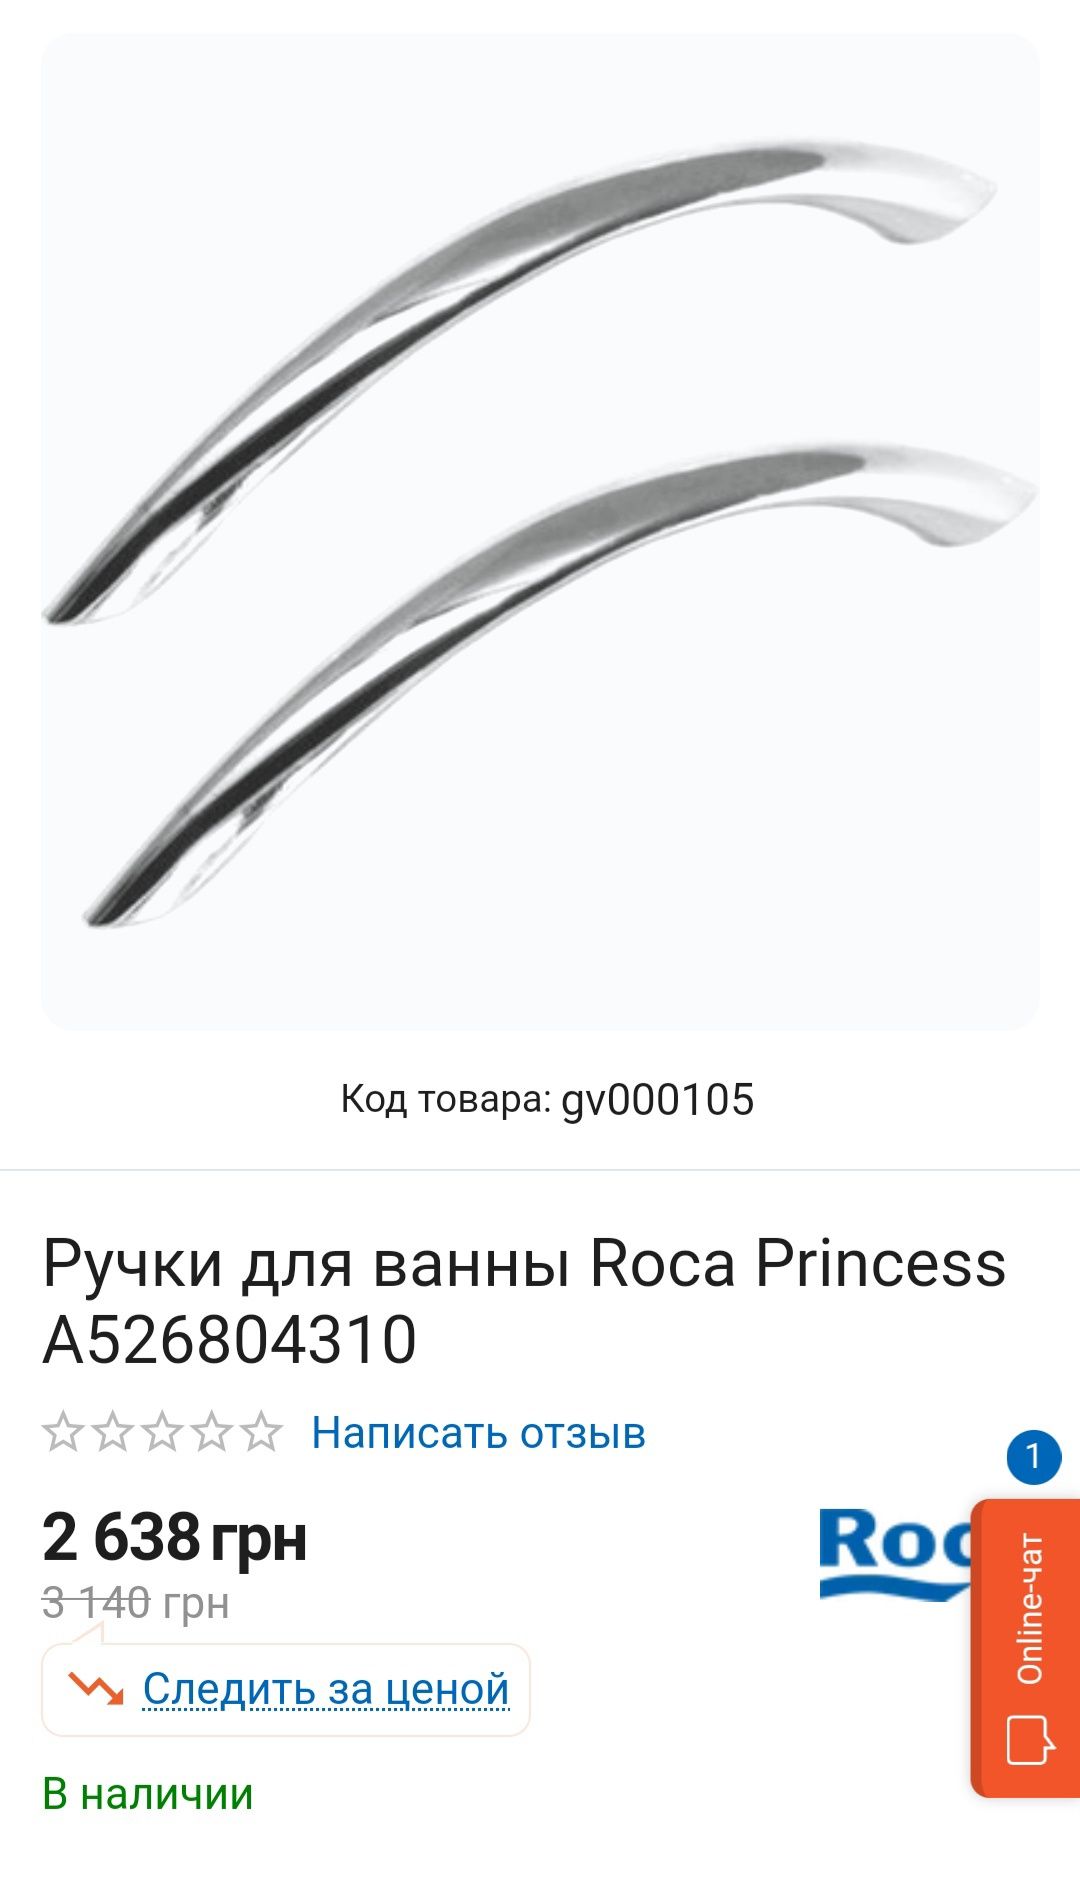 Ручки для ванны ROCA Princess